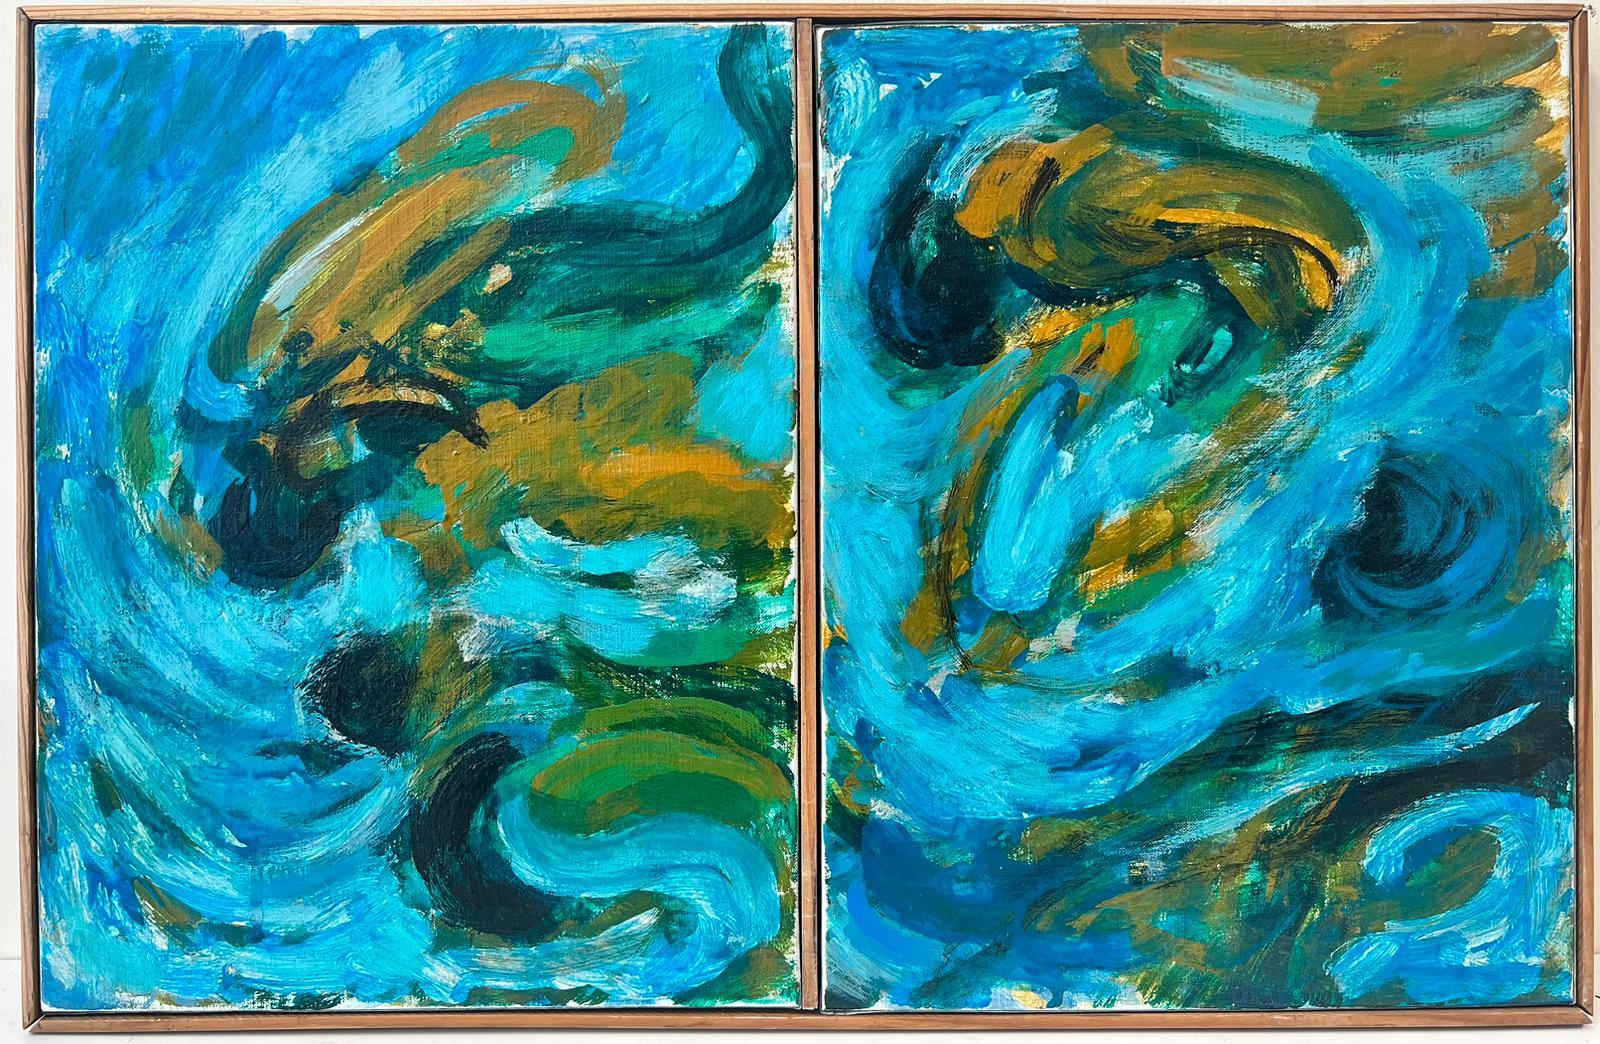 20th Century French School Abstract Painting – Französisches abstrakt-expressionistisches Paar Ölgemälde auf Leinwand in Türkisblau, 1960er Jahre